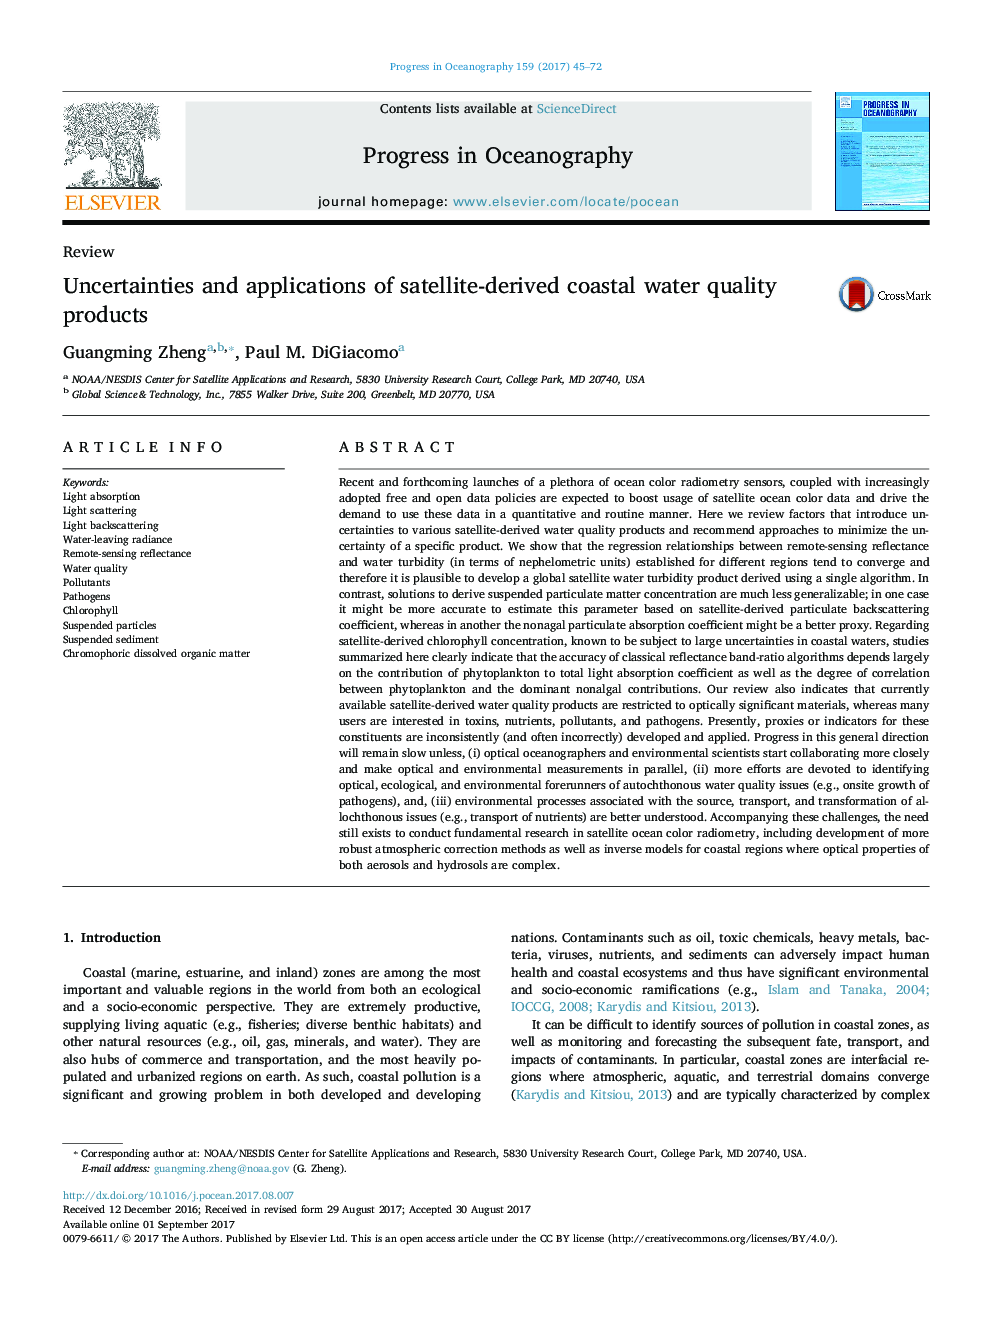 بررسی عدم تعریف و کاربرد محصولات با کیفیت آب ساحلی ماهواره ای 